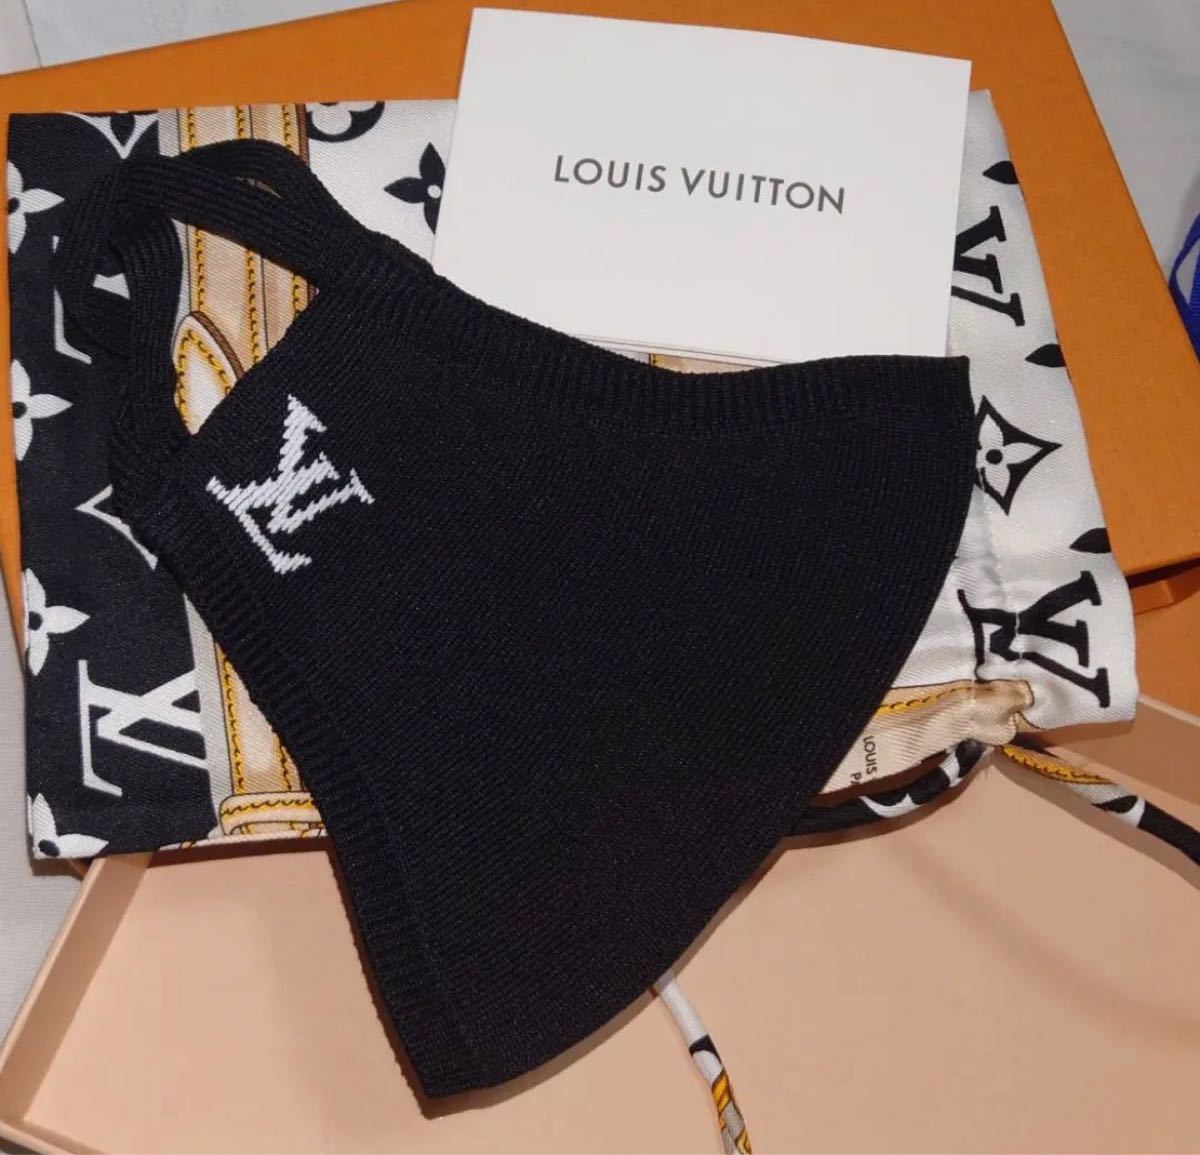 Louis Vuitton Knit face mask (M76748)